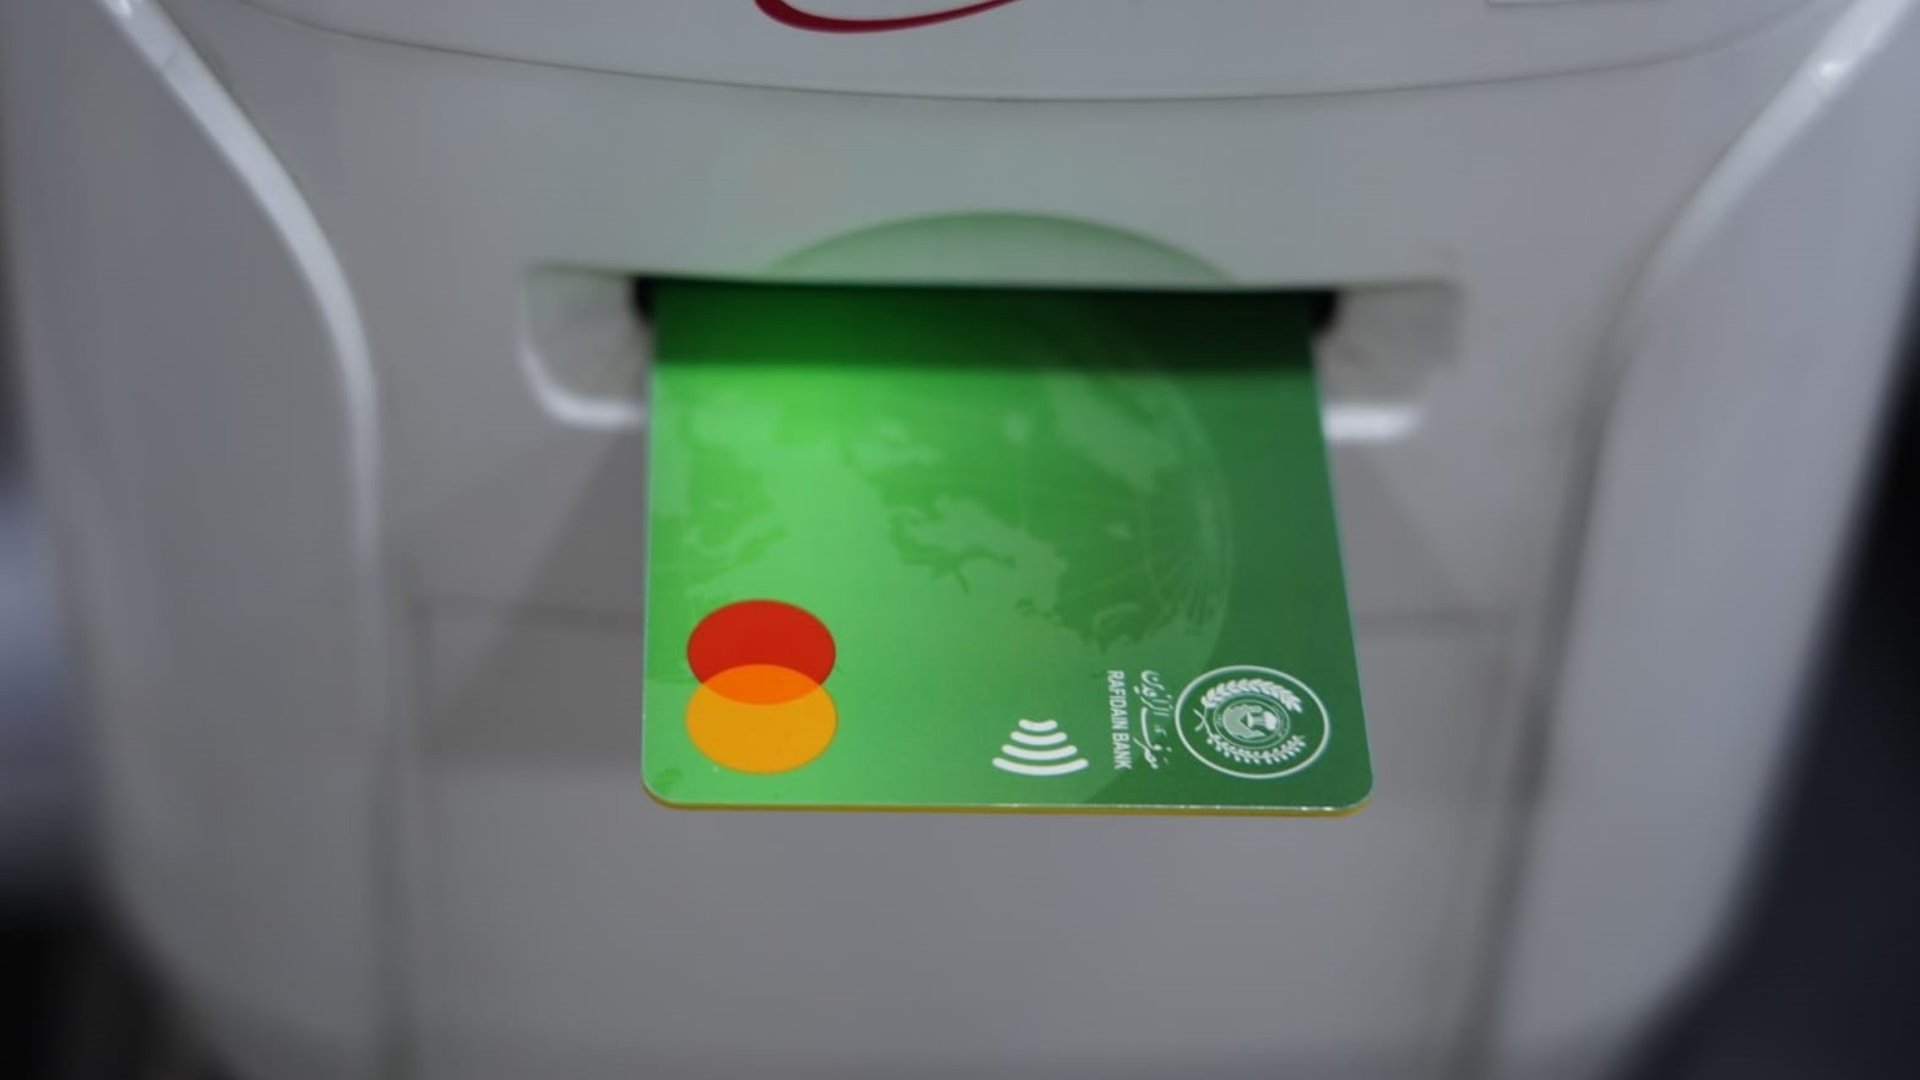 العراقيون أصدروا أكثر من مليوني بطاقة مصرفية في 9 أشهر - رابطة المصارف